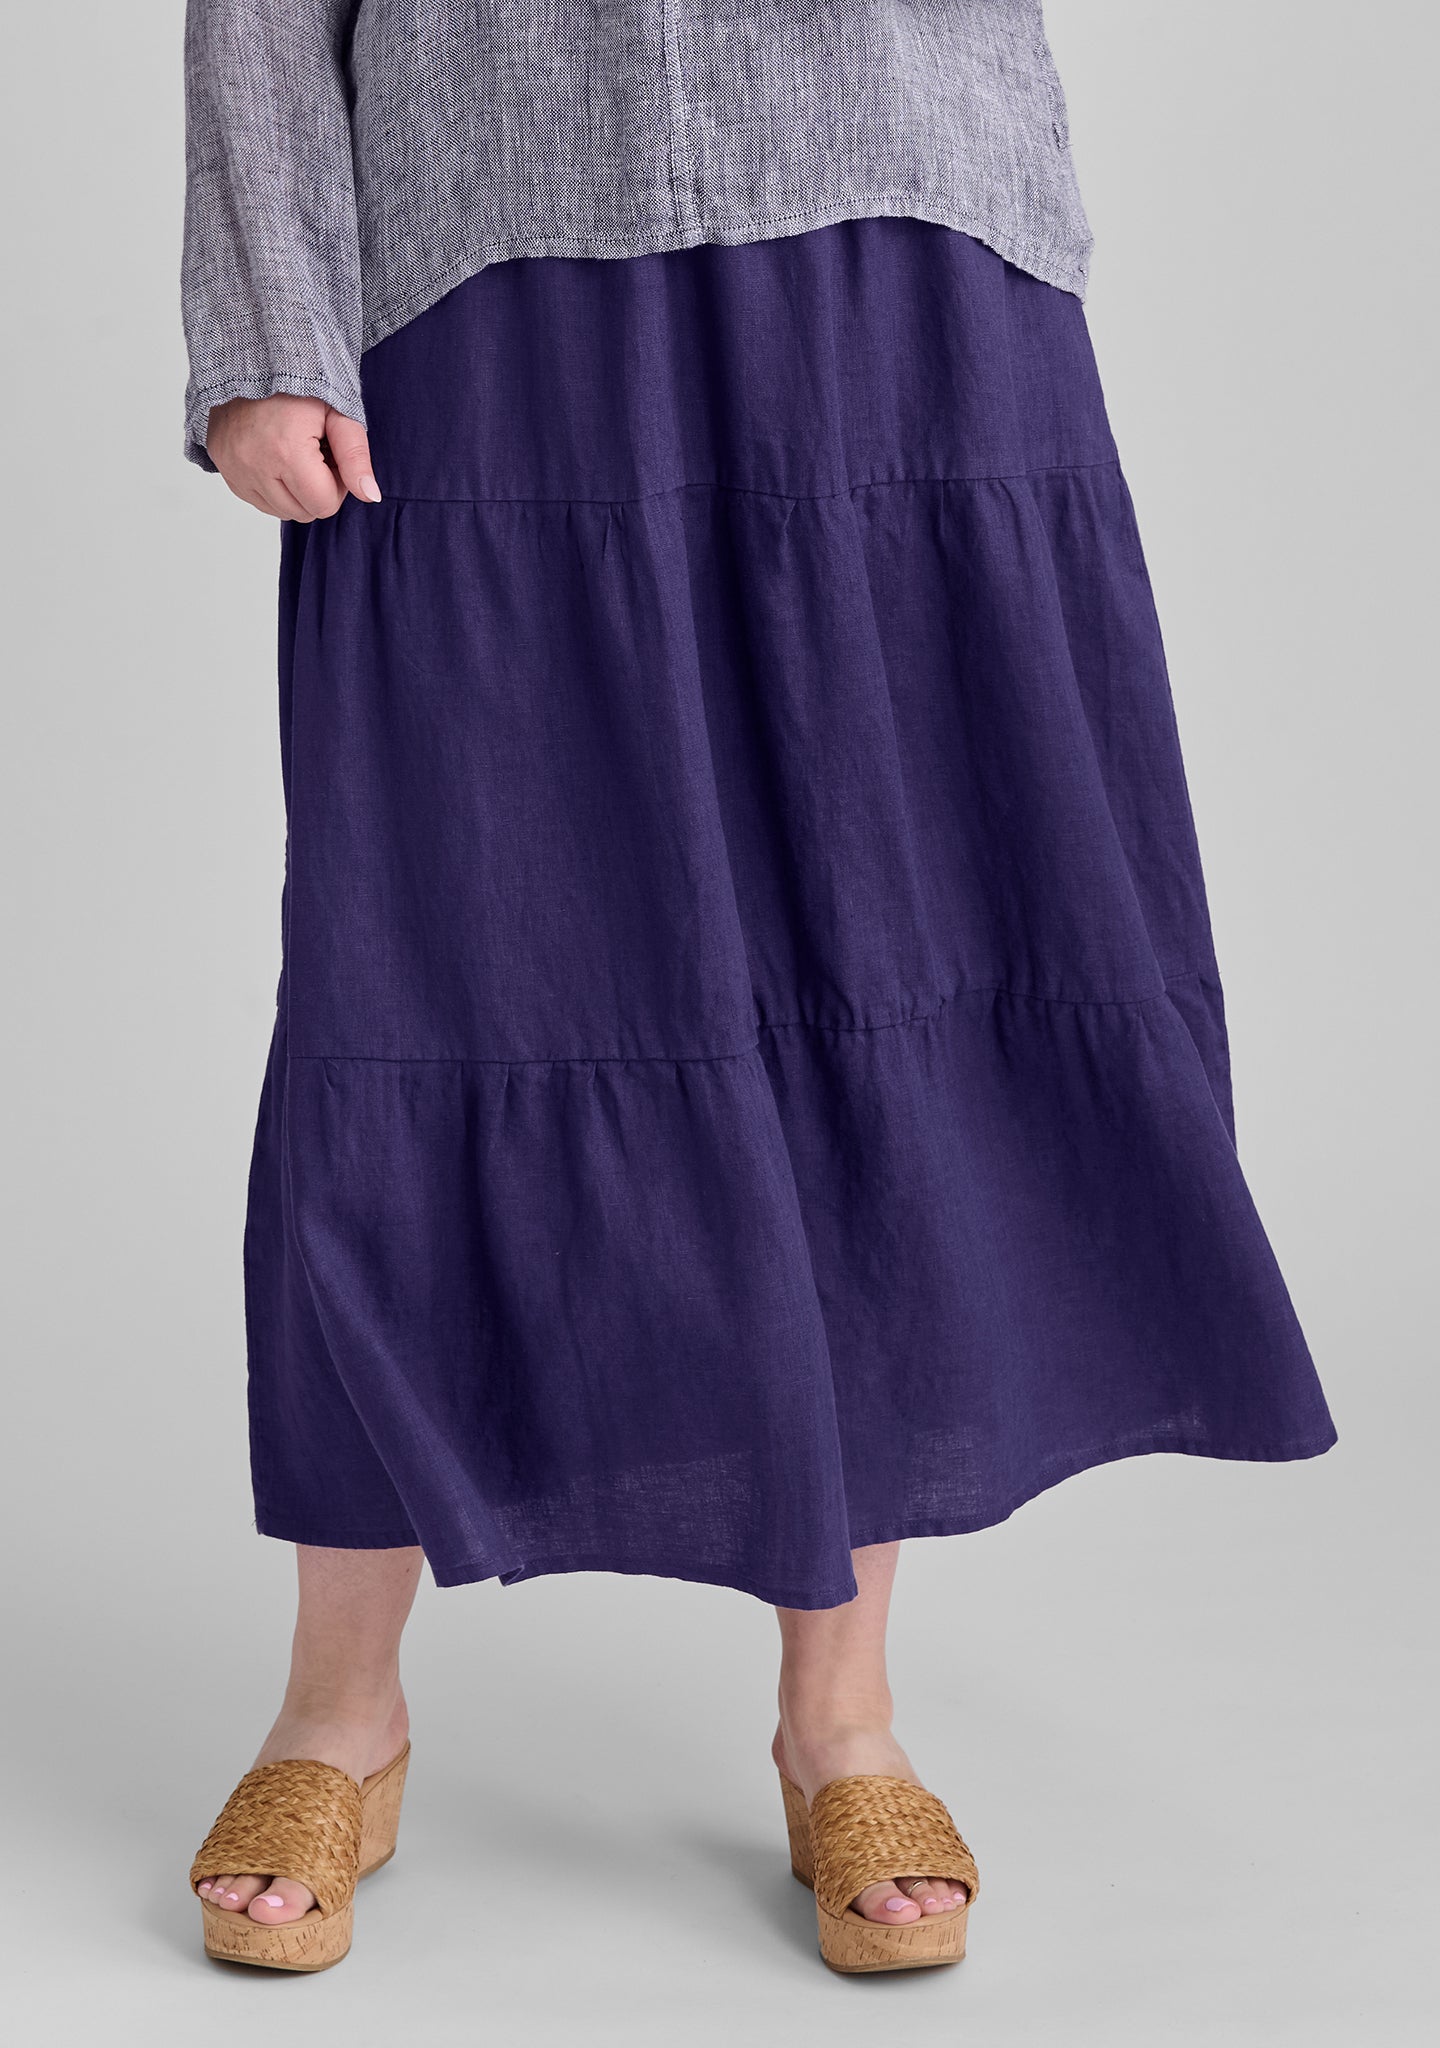 gaia skirt linen maxi skirt blue